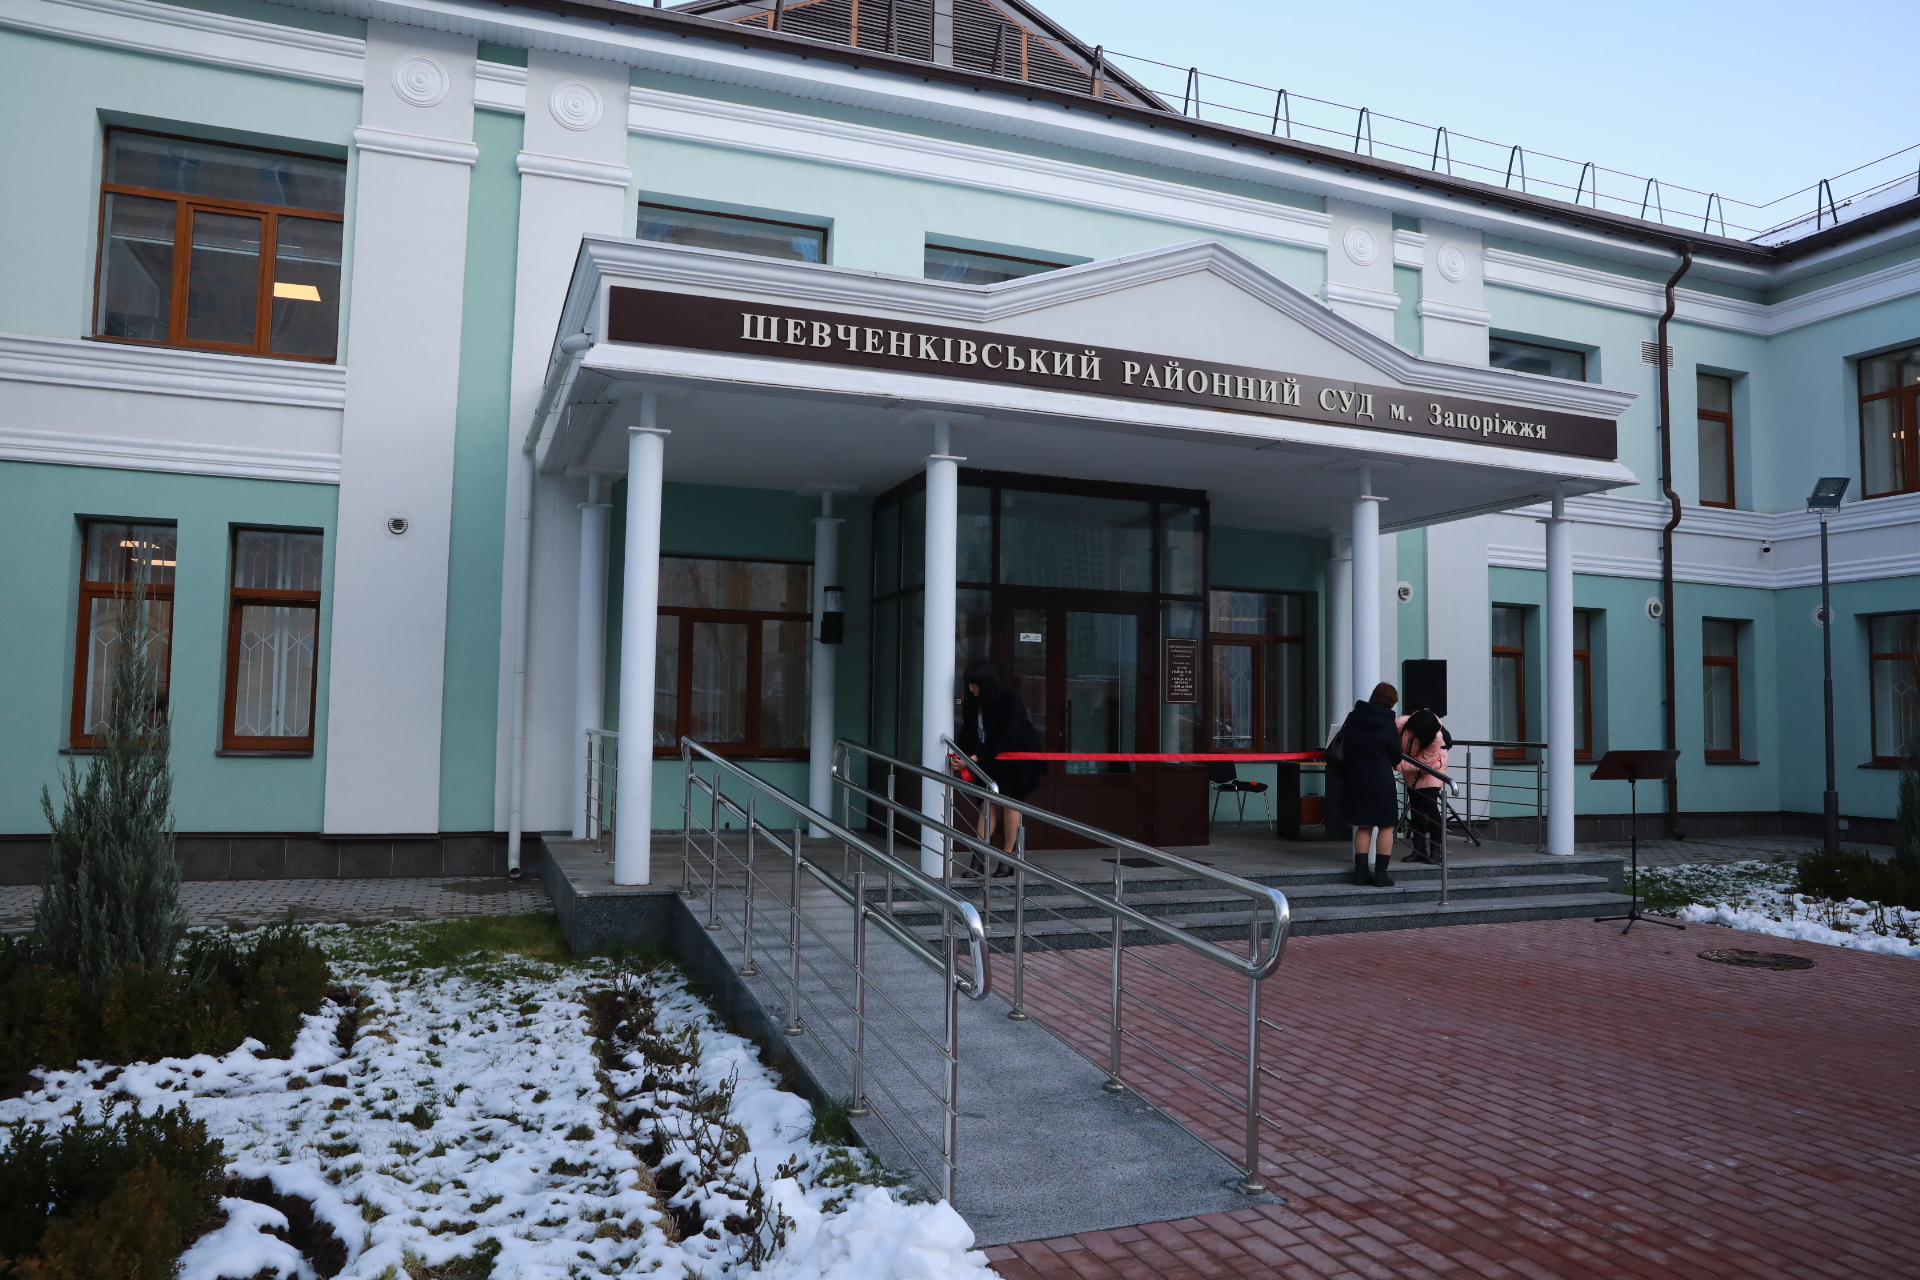 “Реконструкция за 50 миллионов”: в Запорожье после ремонта открылось здание суда (ФОТО)